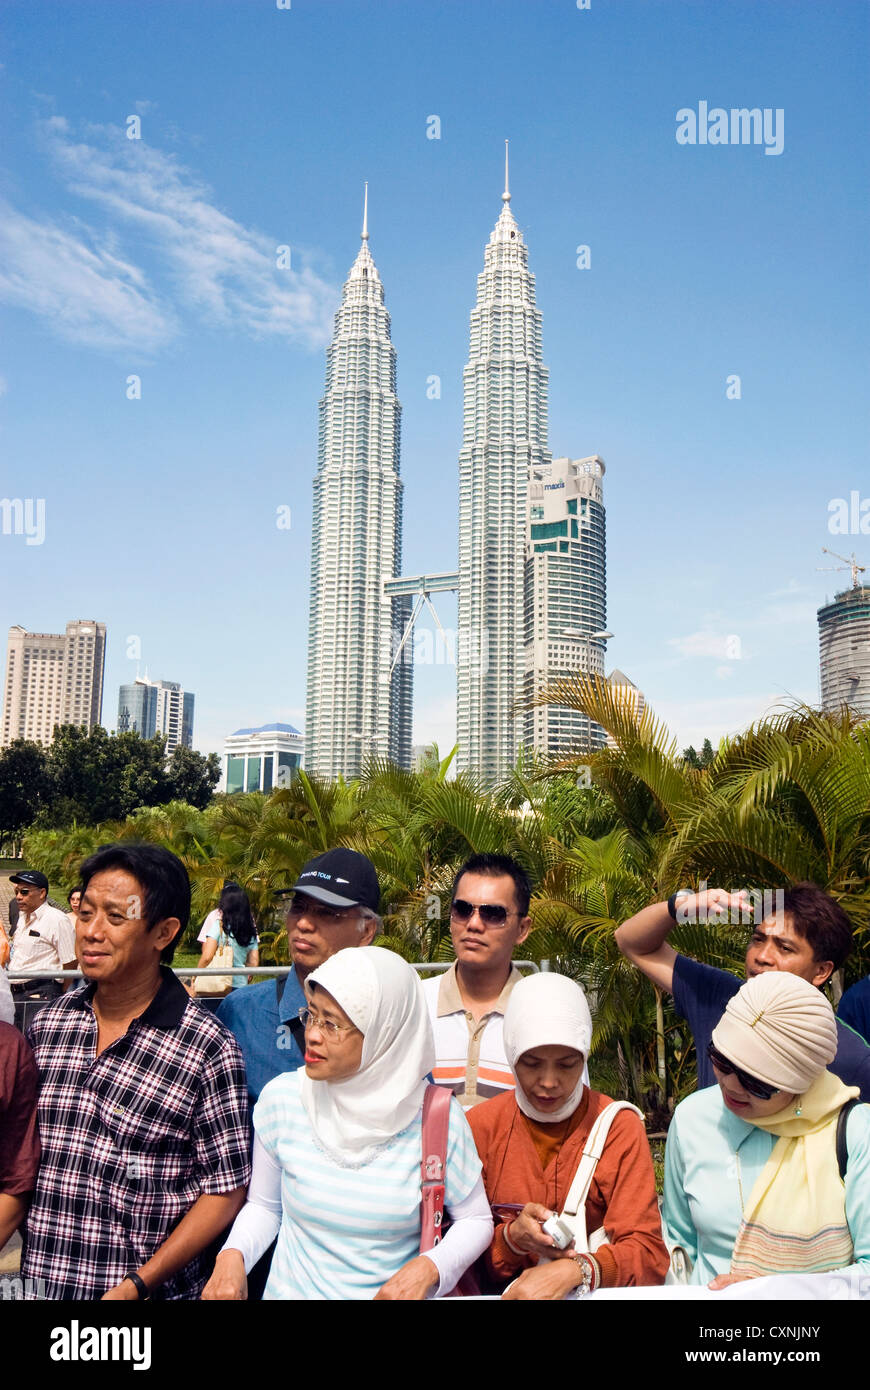 PETRONAS Twin Towers, Kuala Lumpur, Malaysia, Asia Stock Photo